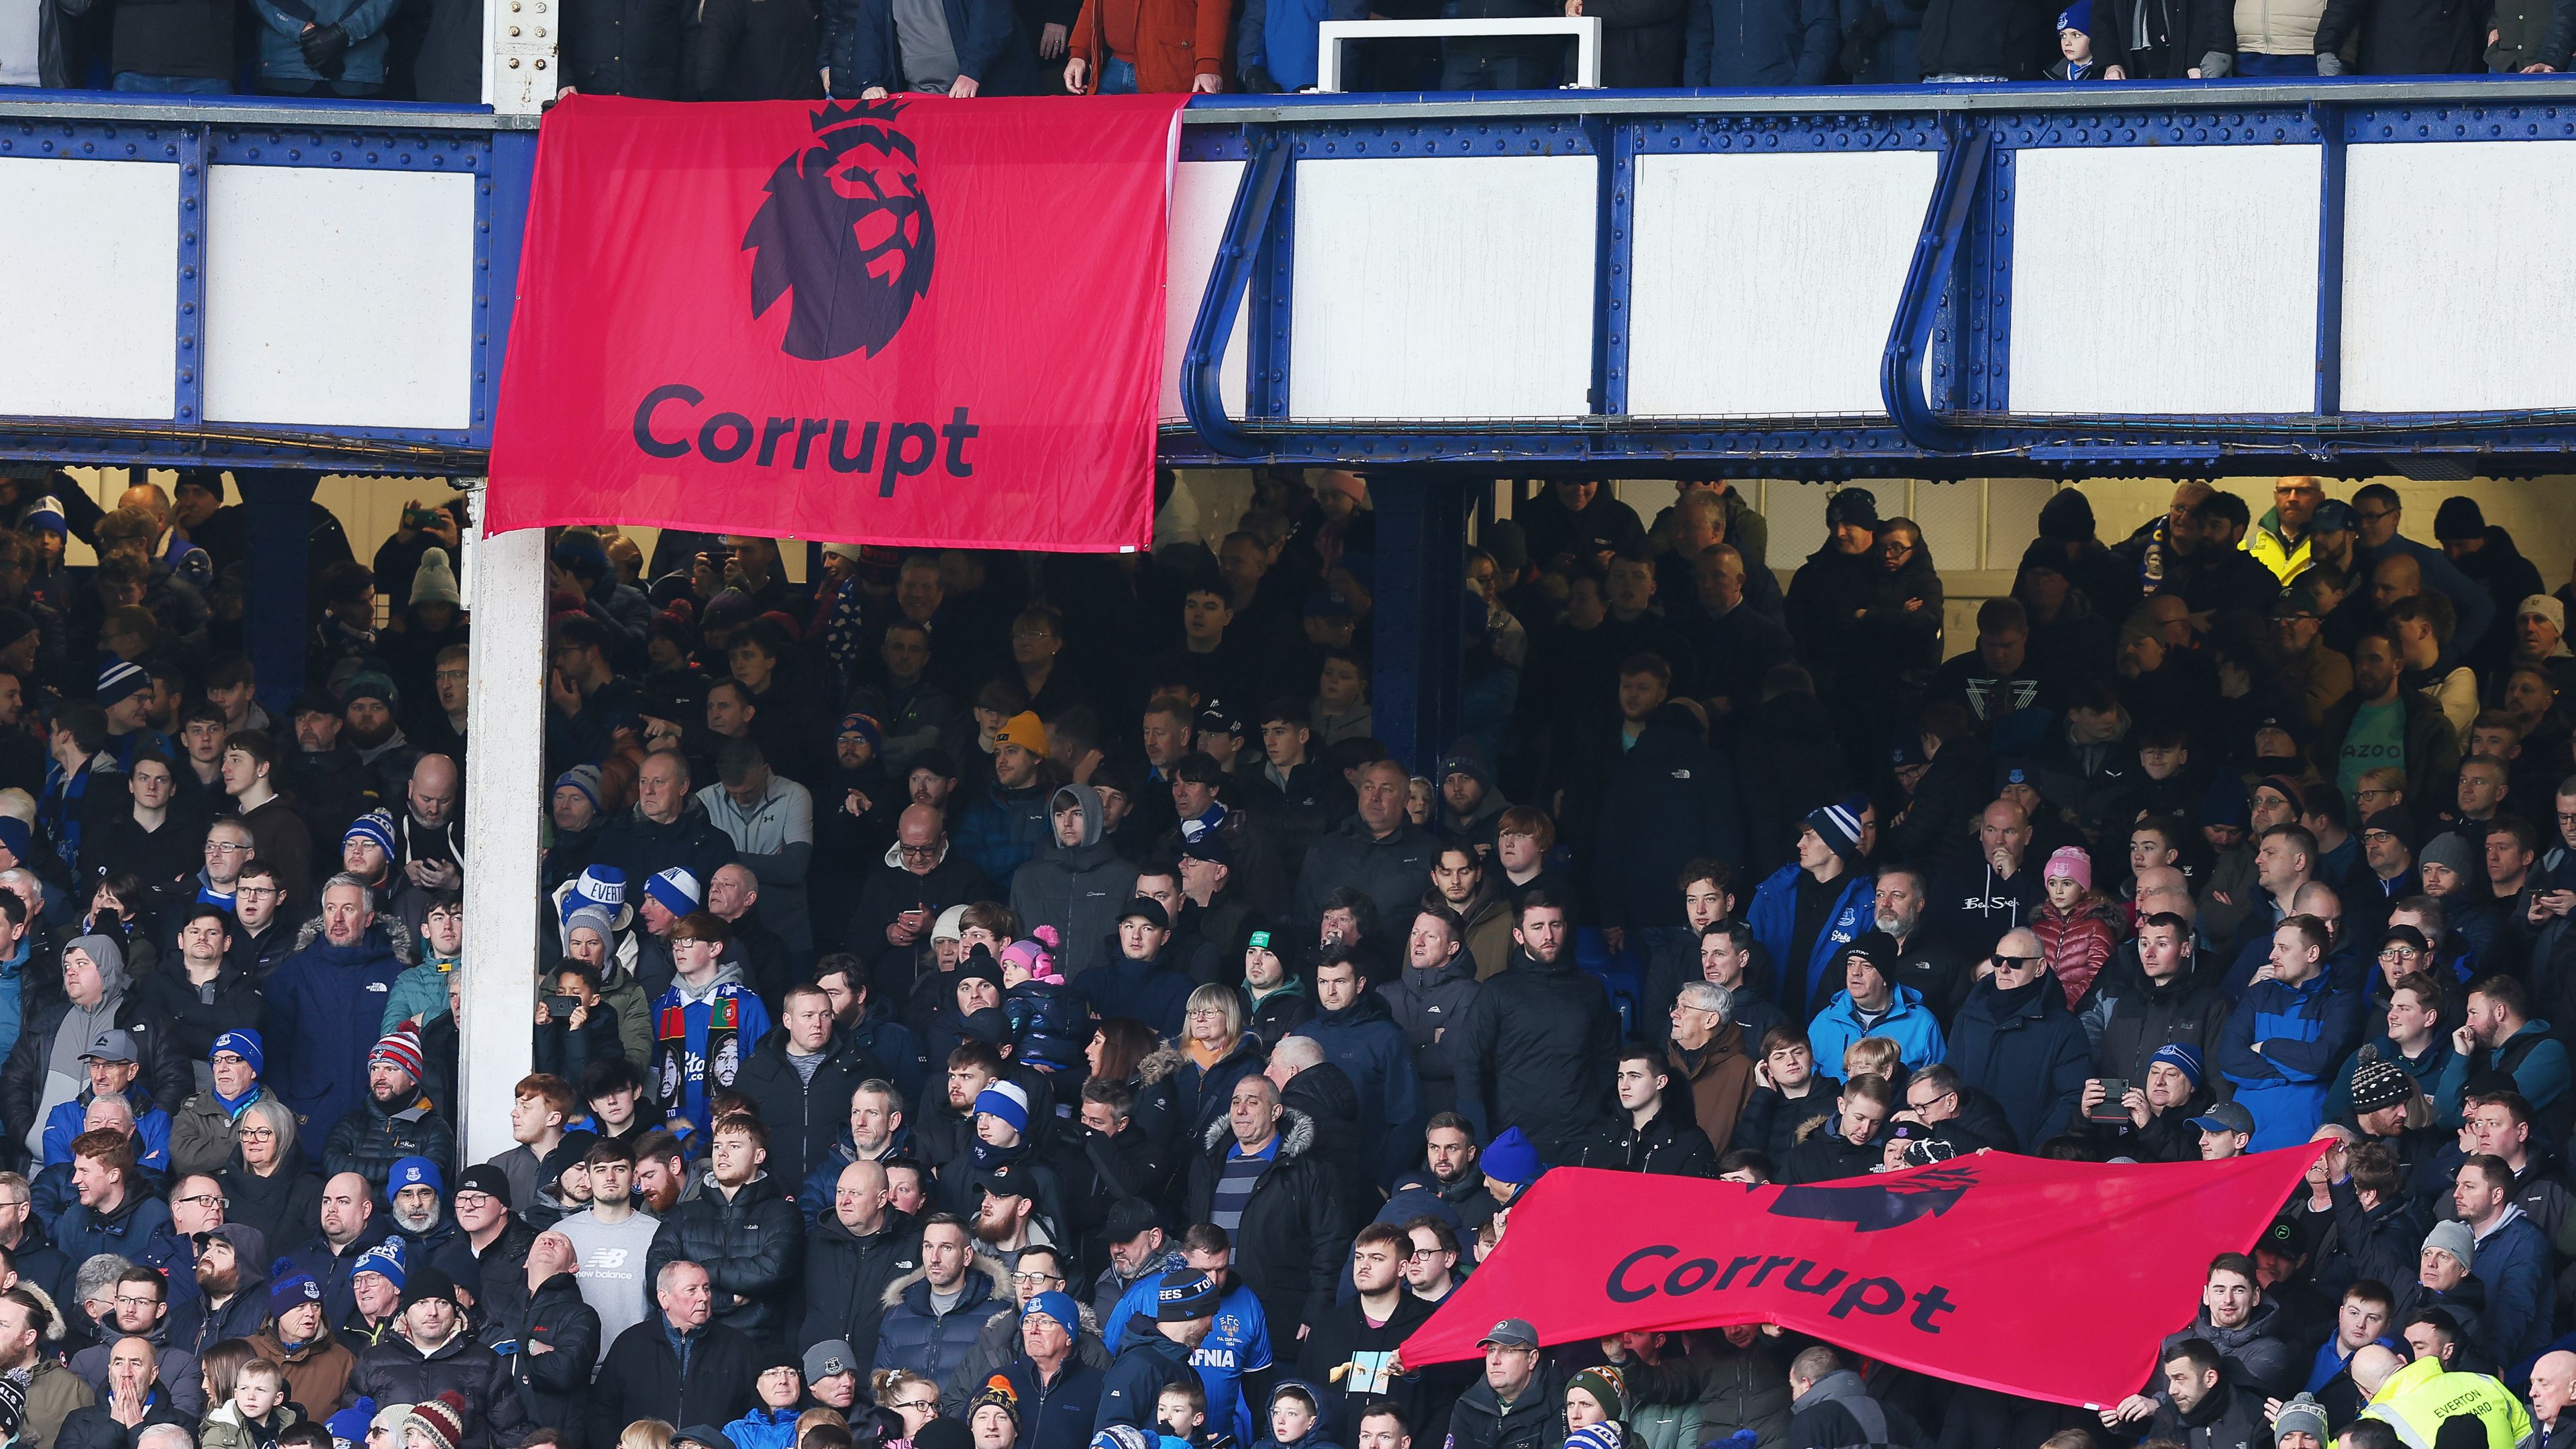 Az együttes drukkerei korruptsággal vádolják a Premier League-t (Fotó: Getty Images)